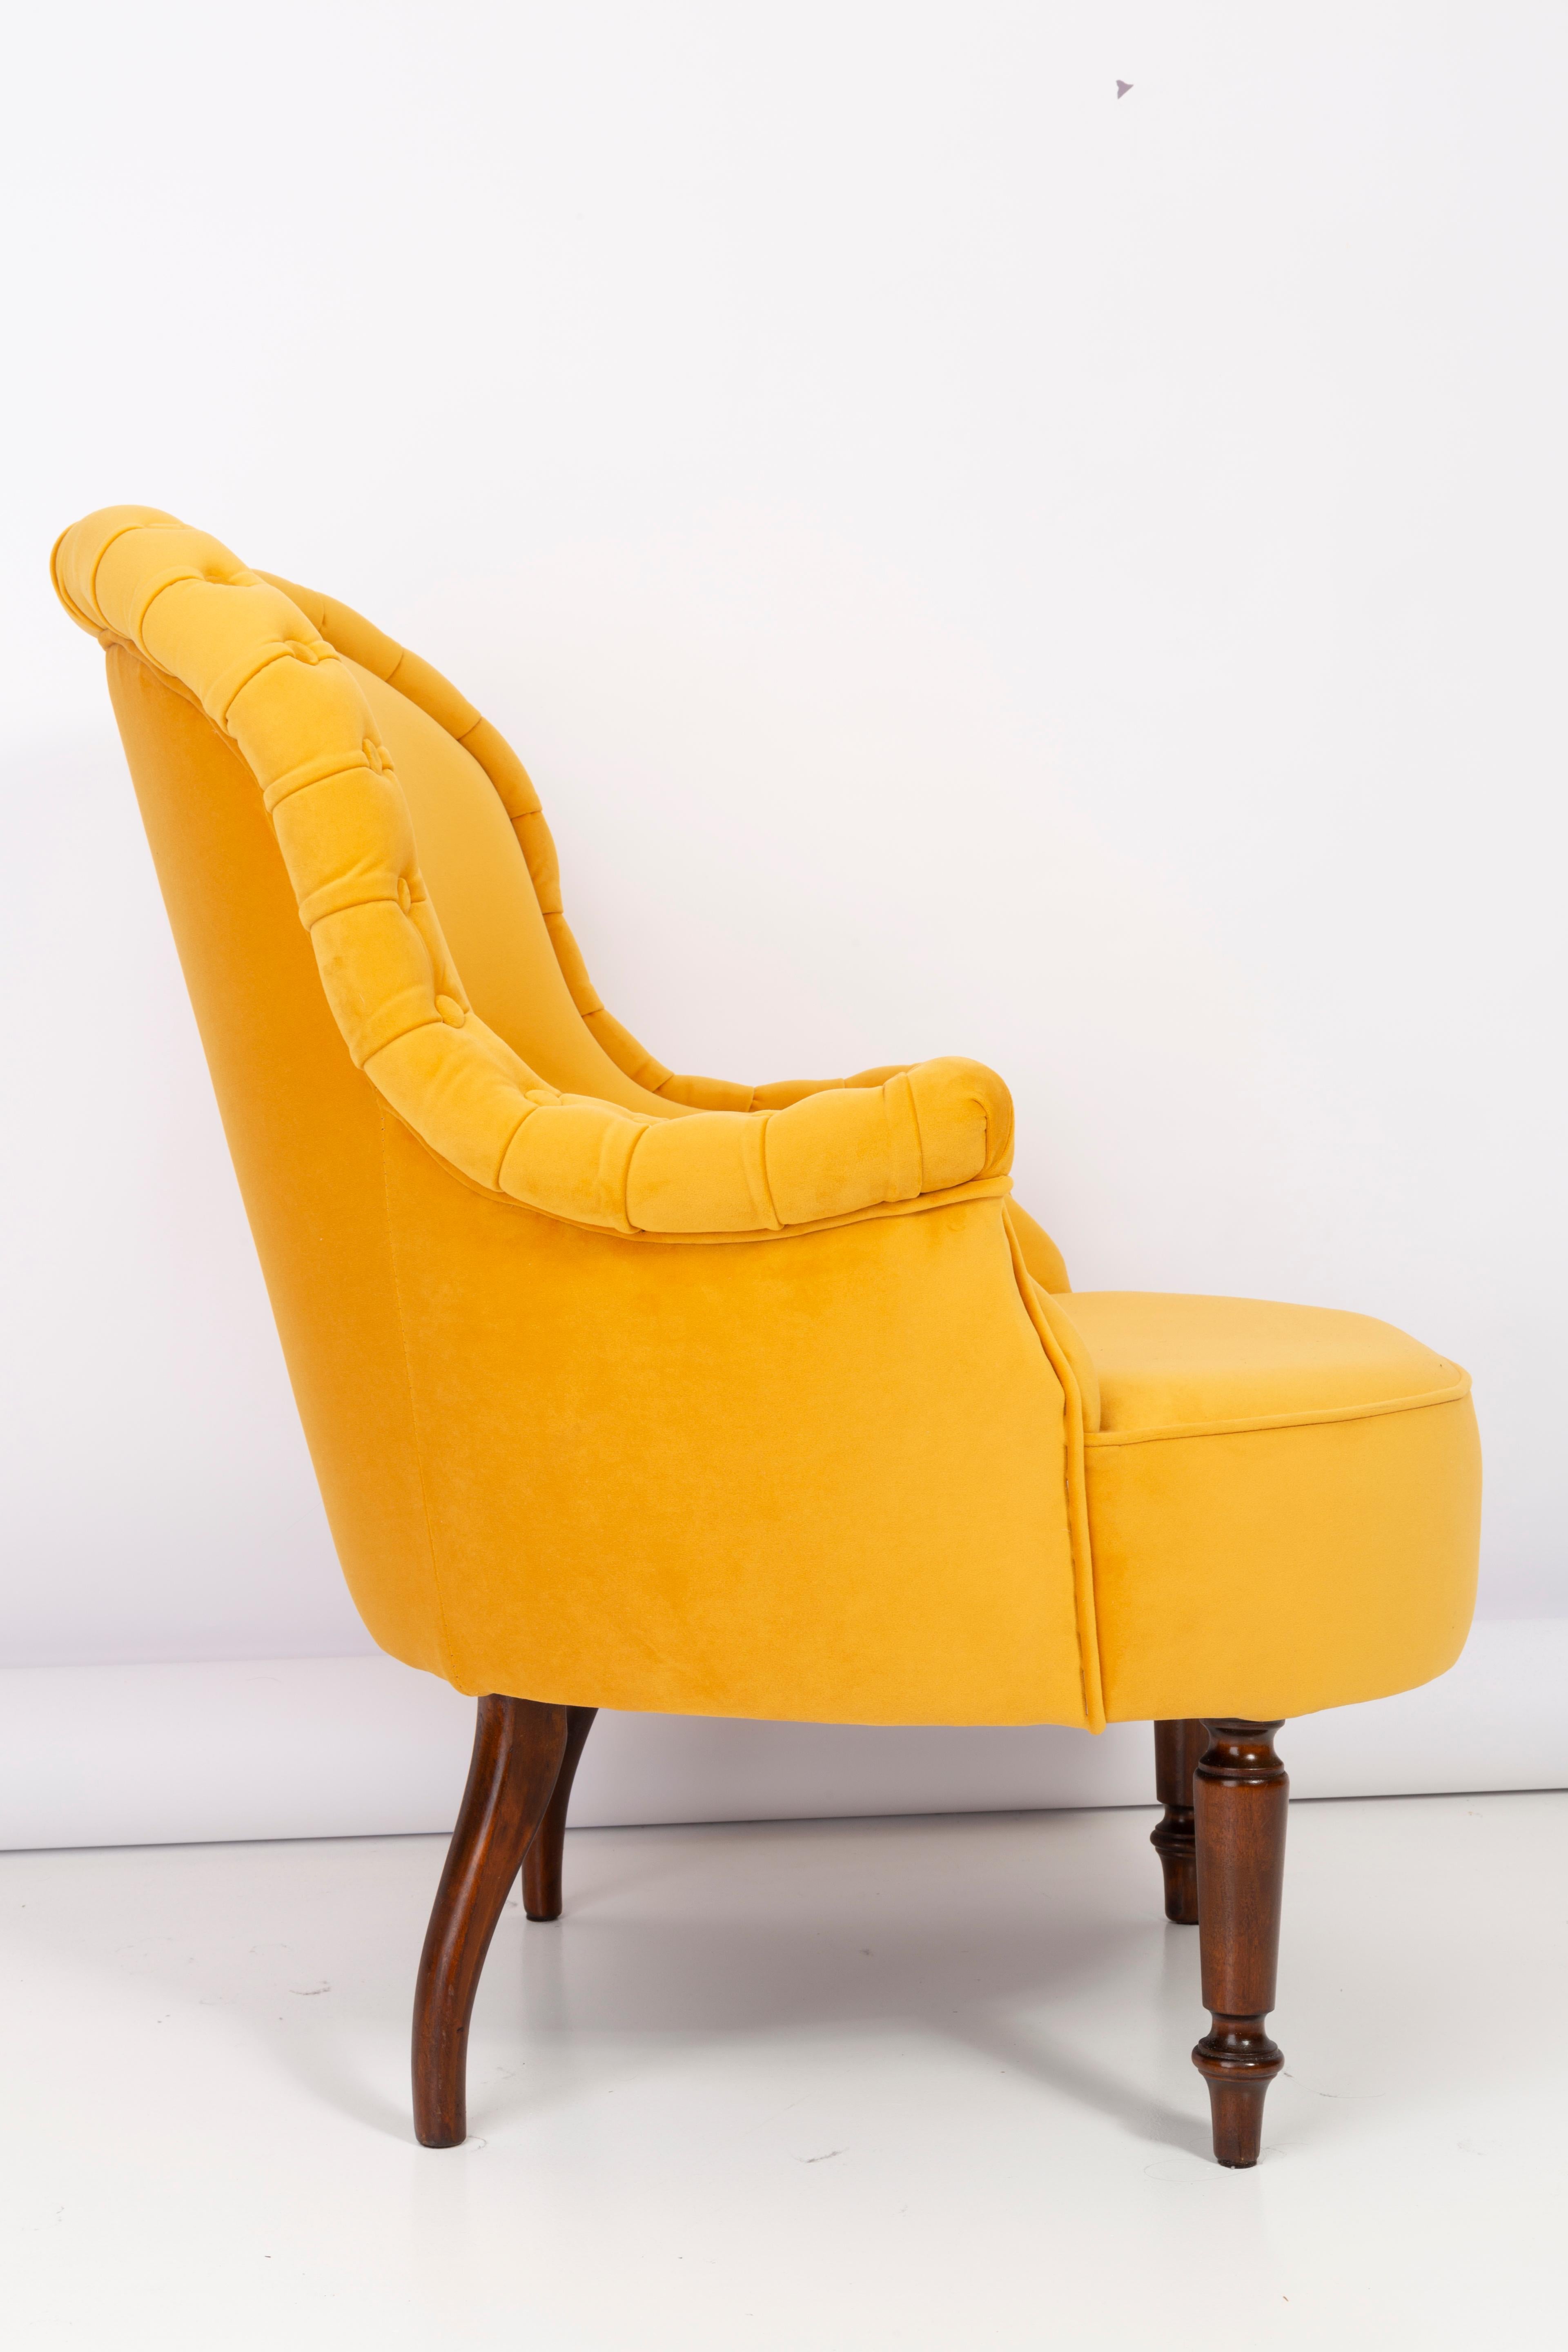 Fauteuil allemand produit dans les années 1930 à Berlin. Le fauteuil est après une rénovation complète de la tapisserie et de la menuiserie. Les pieds en bois sont soigneusement nettoyés et recouverts d'un vernis semi-mat de la couleur d'une noix.